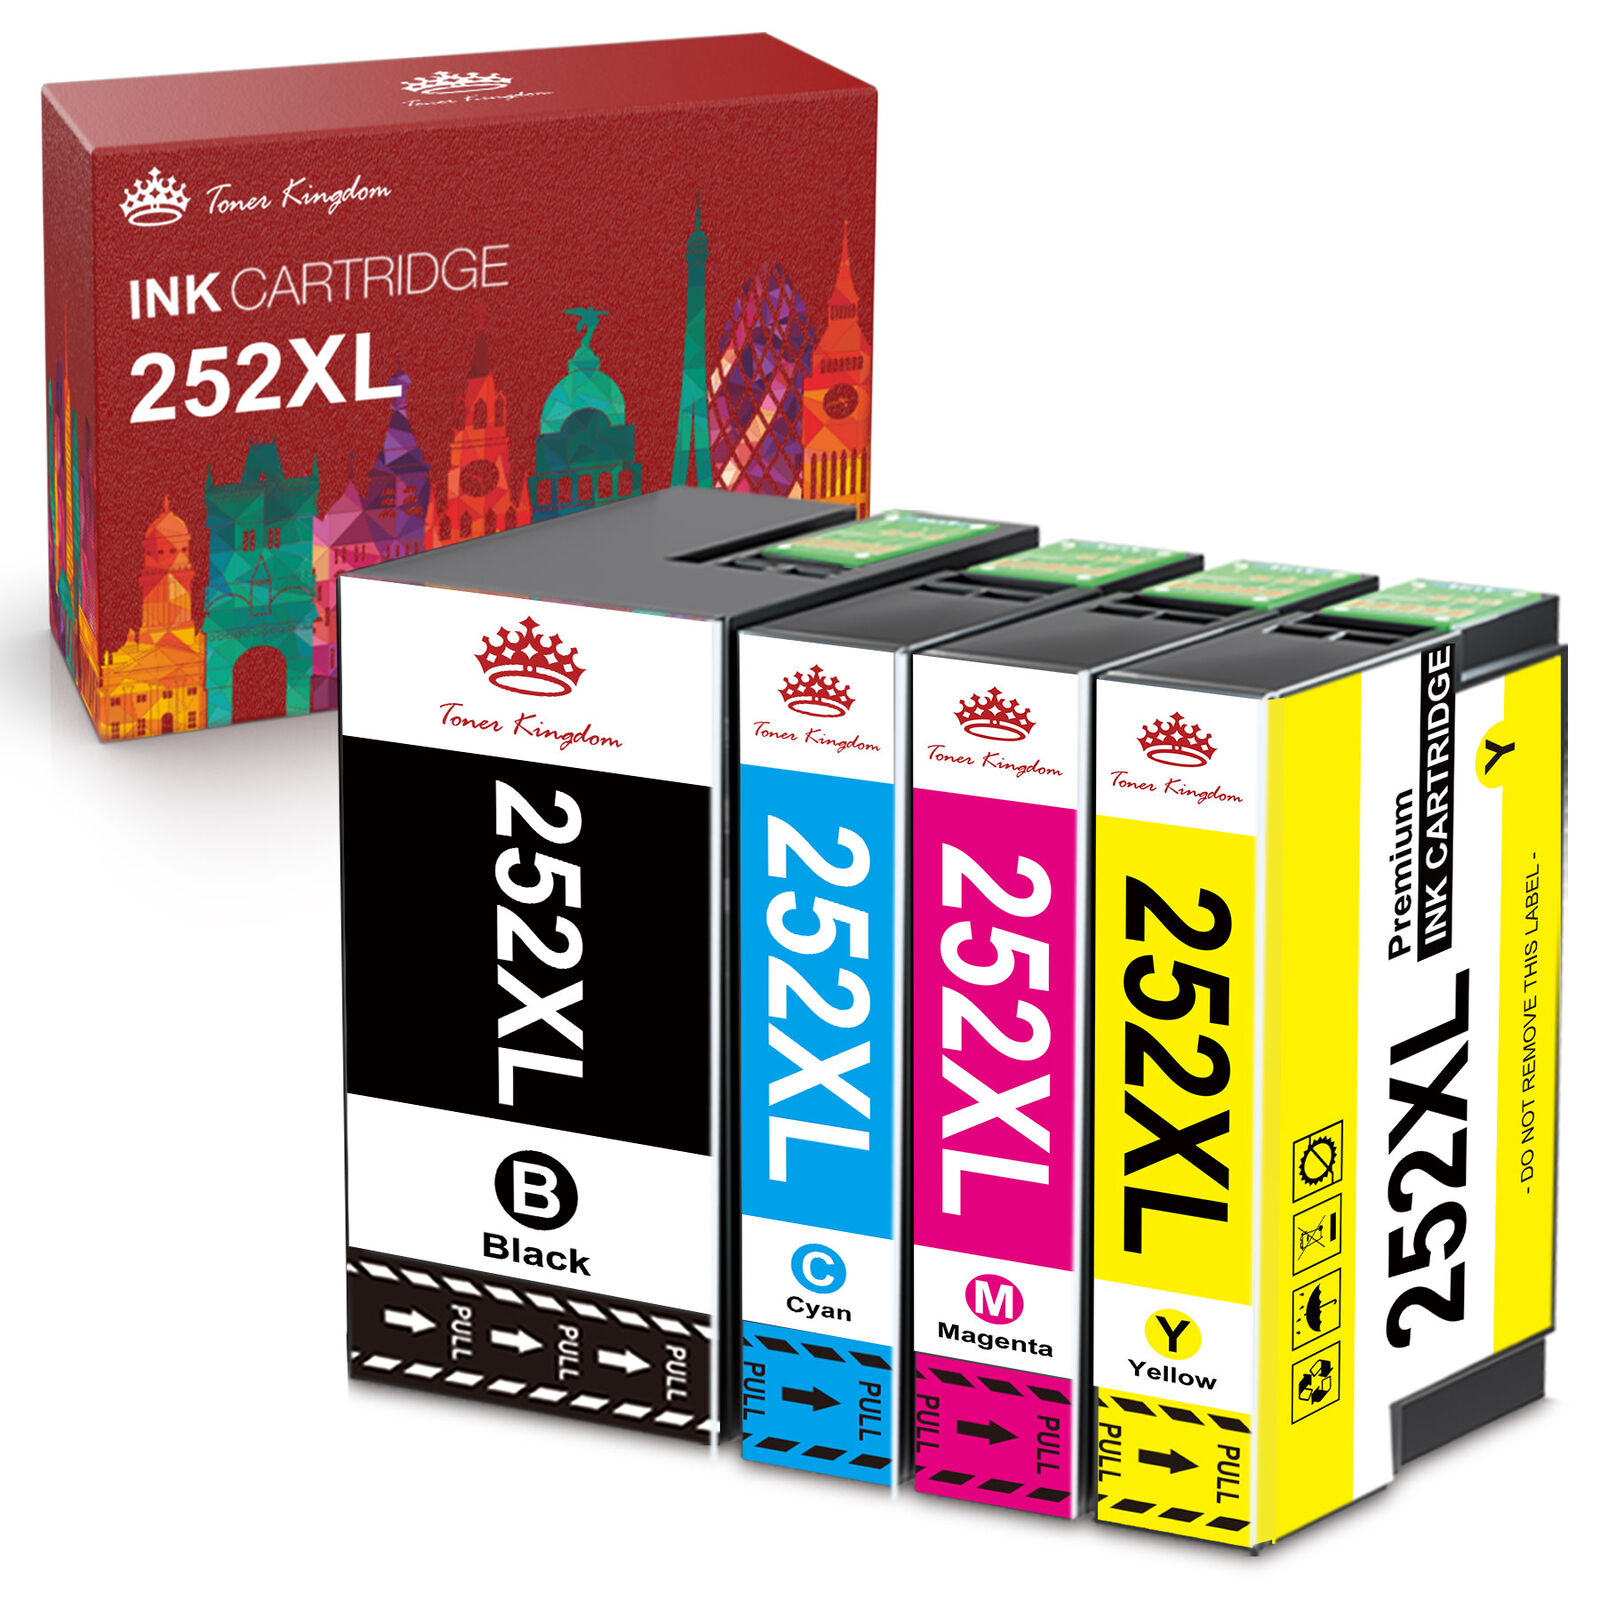 T252XL 252XL 252 XL Ink Cartridges For Epson WorkForce WF-3640 7710 7620 7720